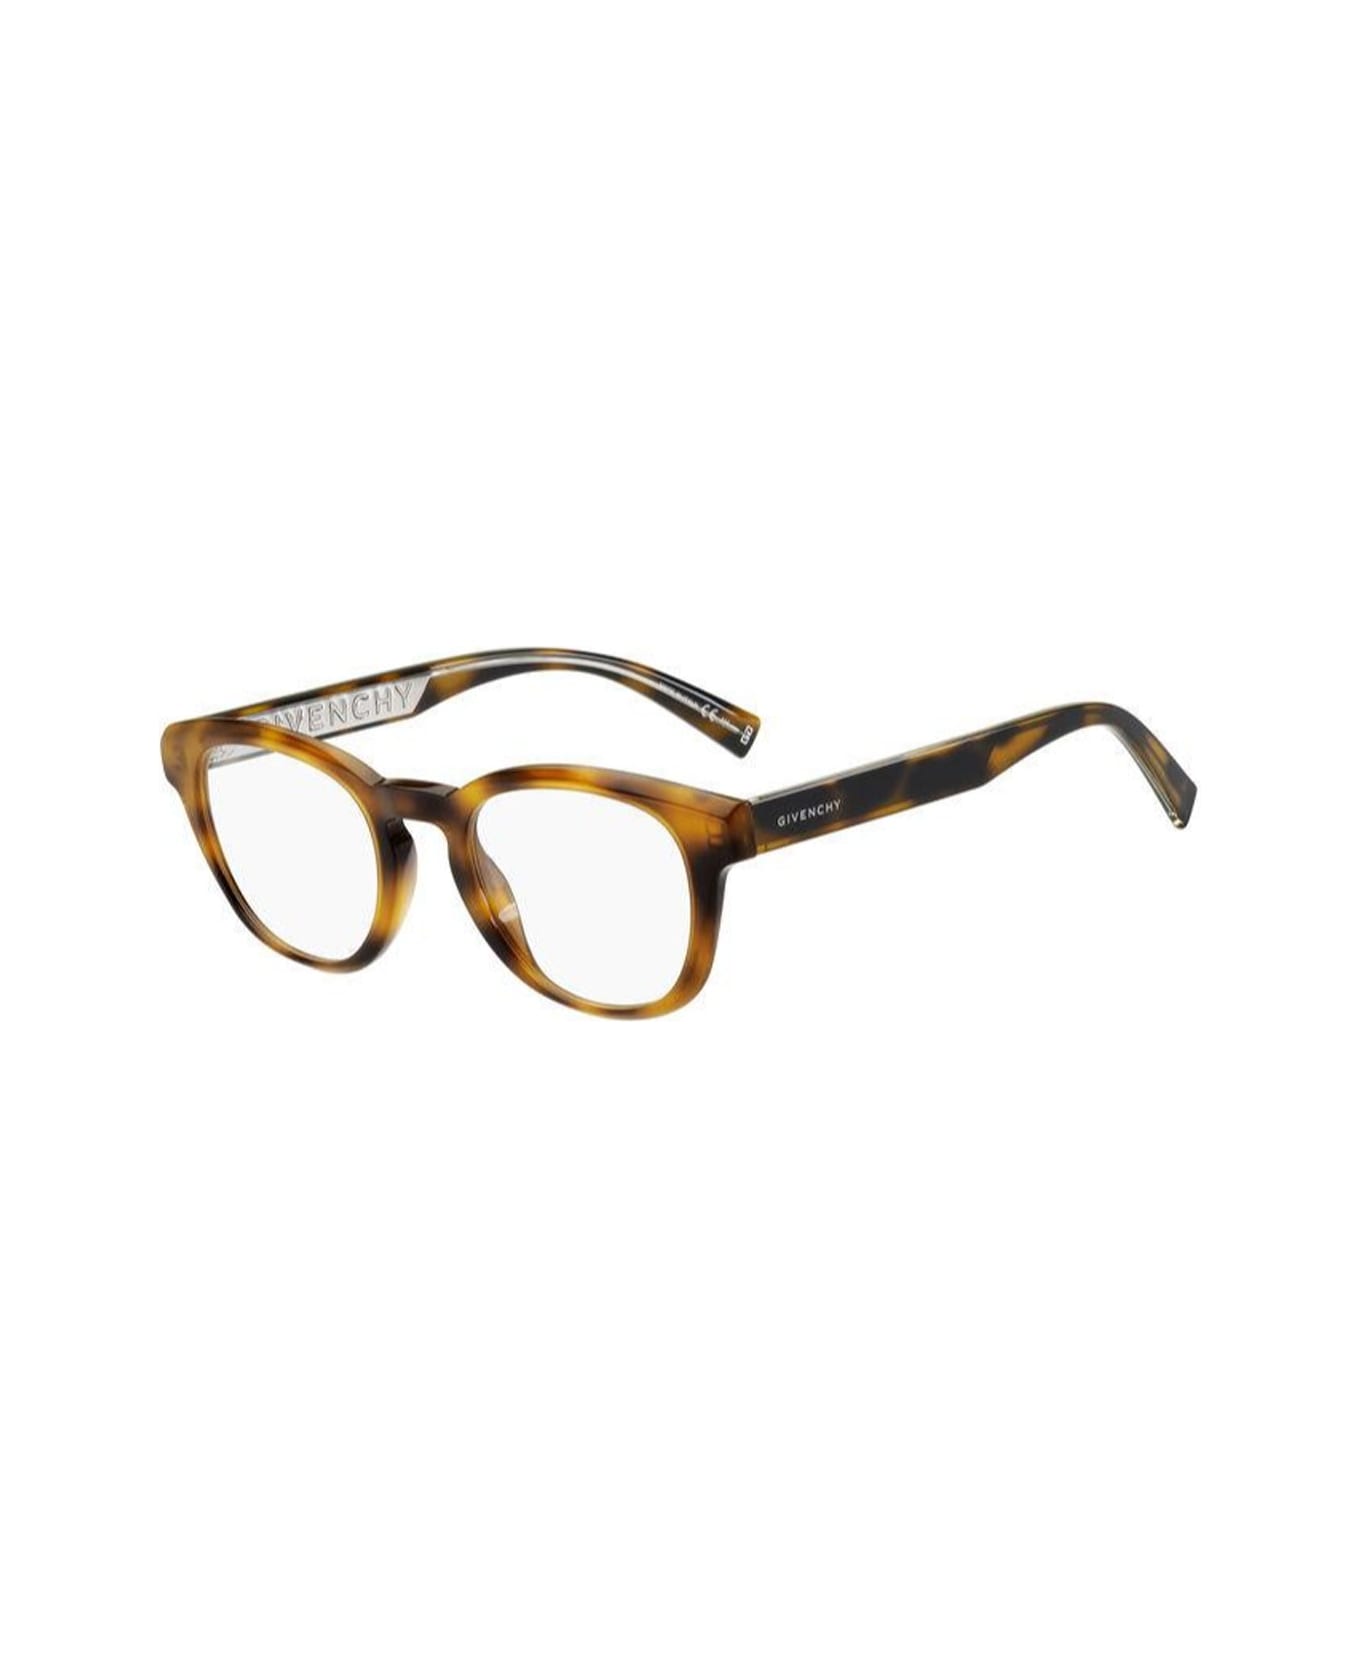 Givenchy Eyewear Gv 0156 Glasses - Marrone アイウェア